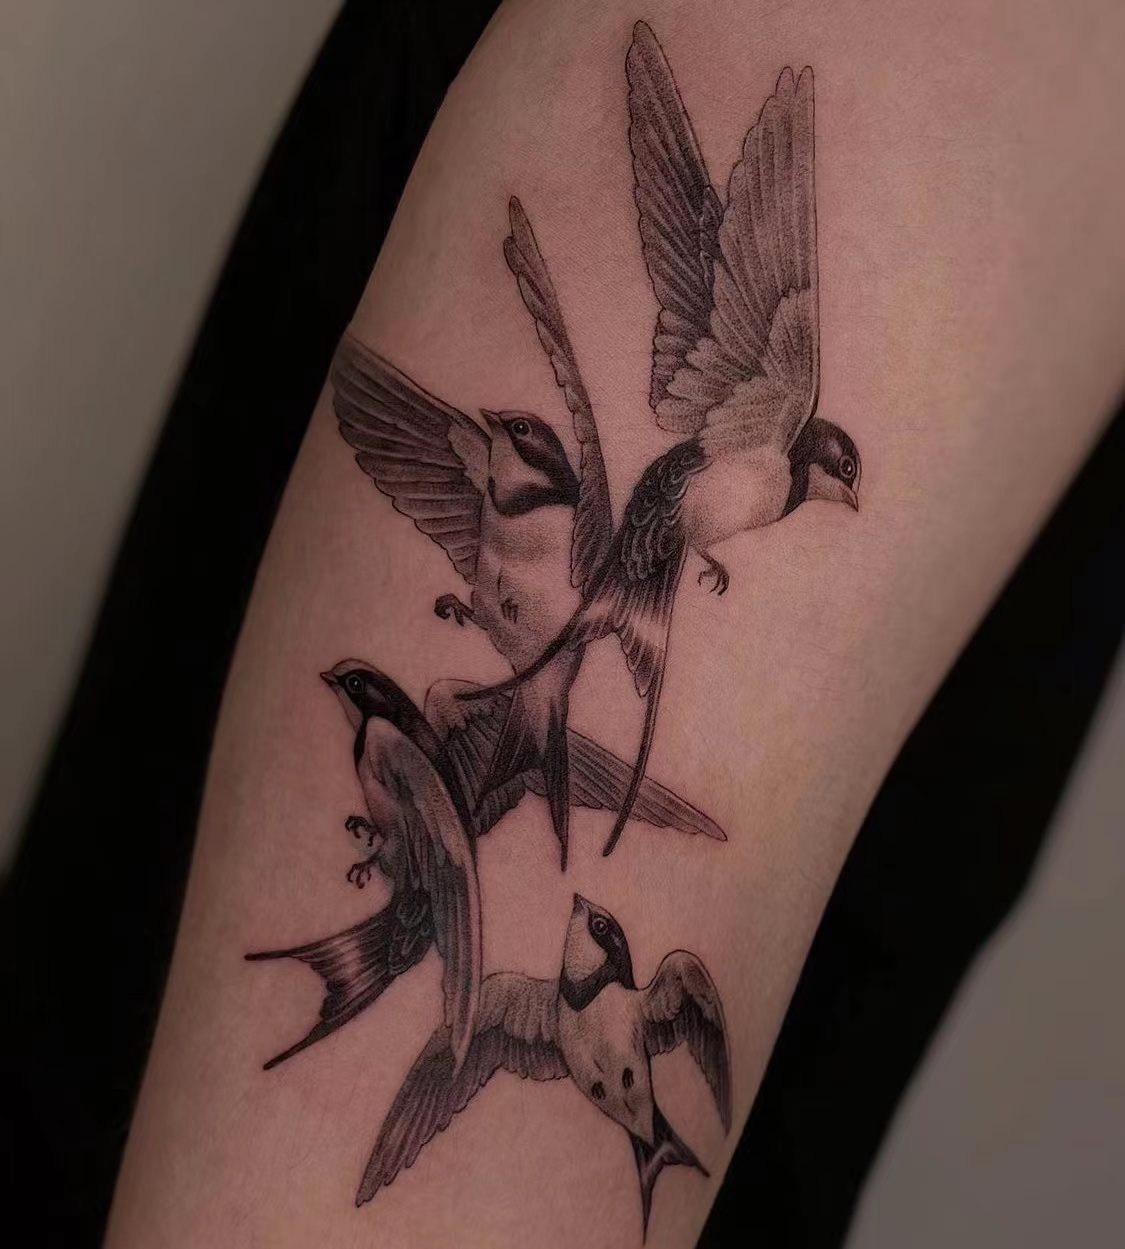 67[心]燕子这么好的寓意,如果你想有一个独特不俗的爱情意义的纹身